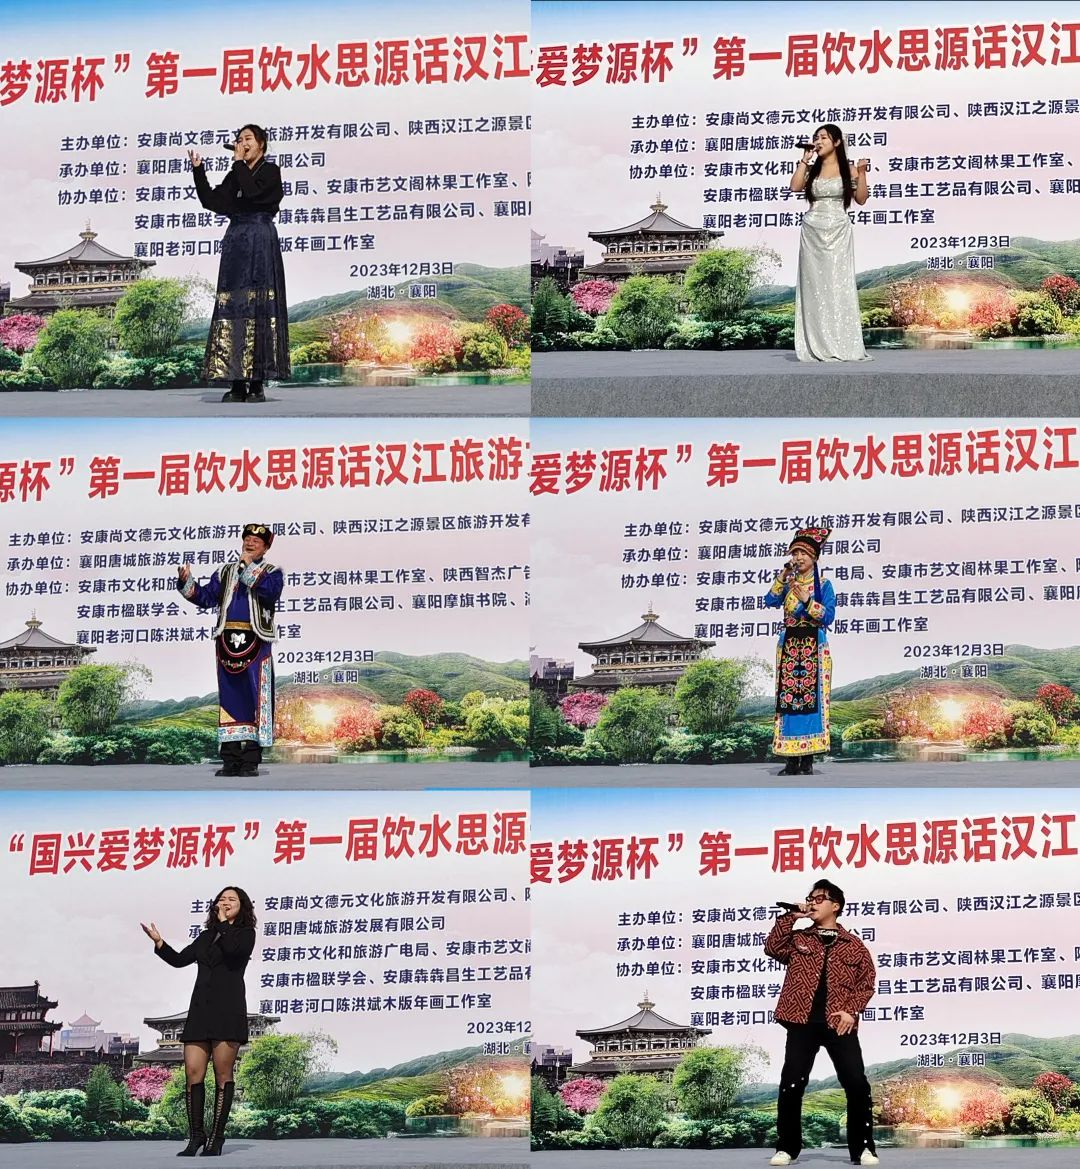 饮水思源话汉江旅游文化艺术博览会第三站在襄阳成功举办